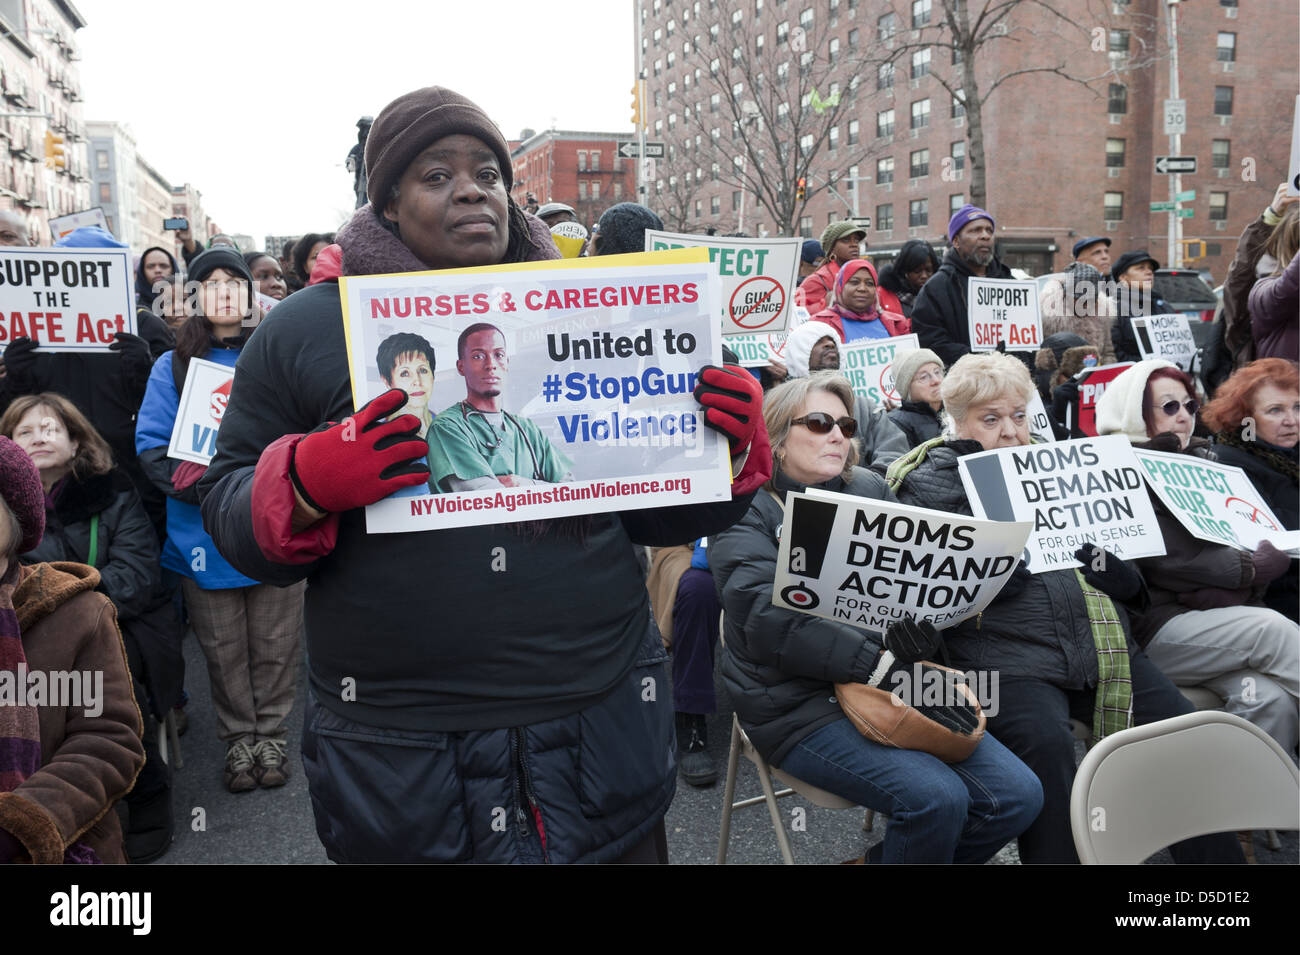 Le donne protestano contro la violenza delle armi e chiedono riforme nel rally nel quartiere Harlem di Manhattan, il 21 marzo 2013. Foto Stock